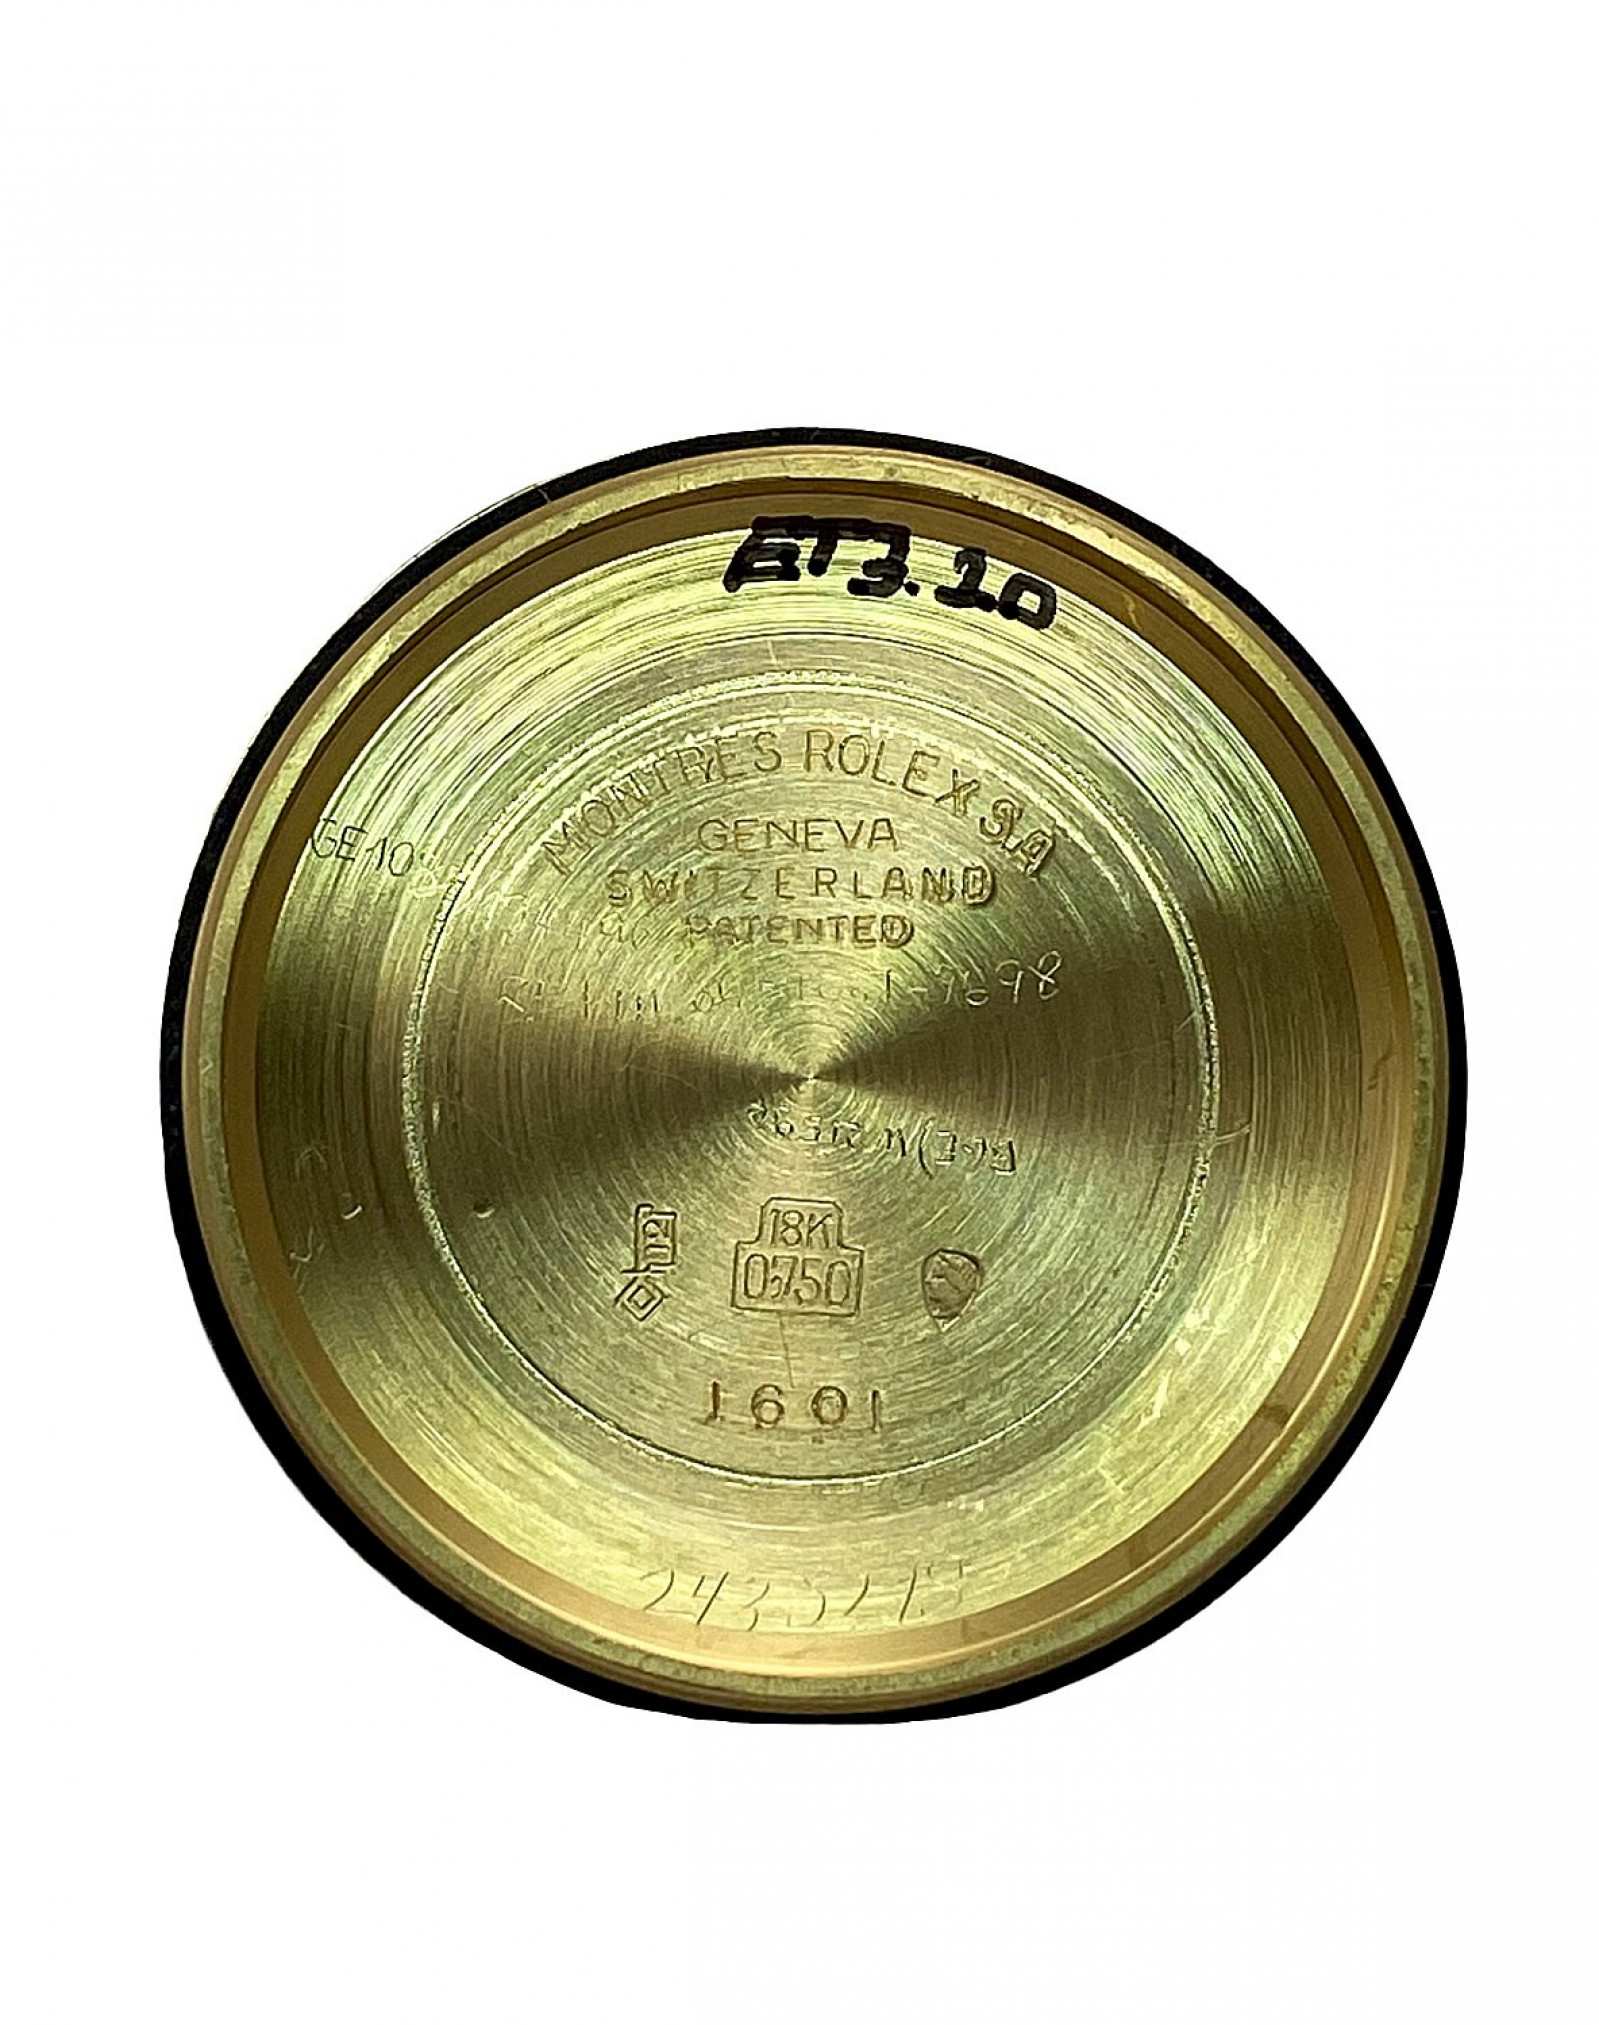 1970 Rolex Datejust Ref. 1607